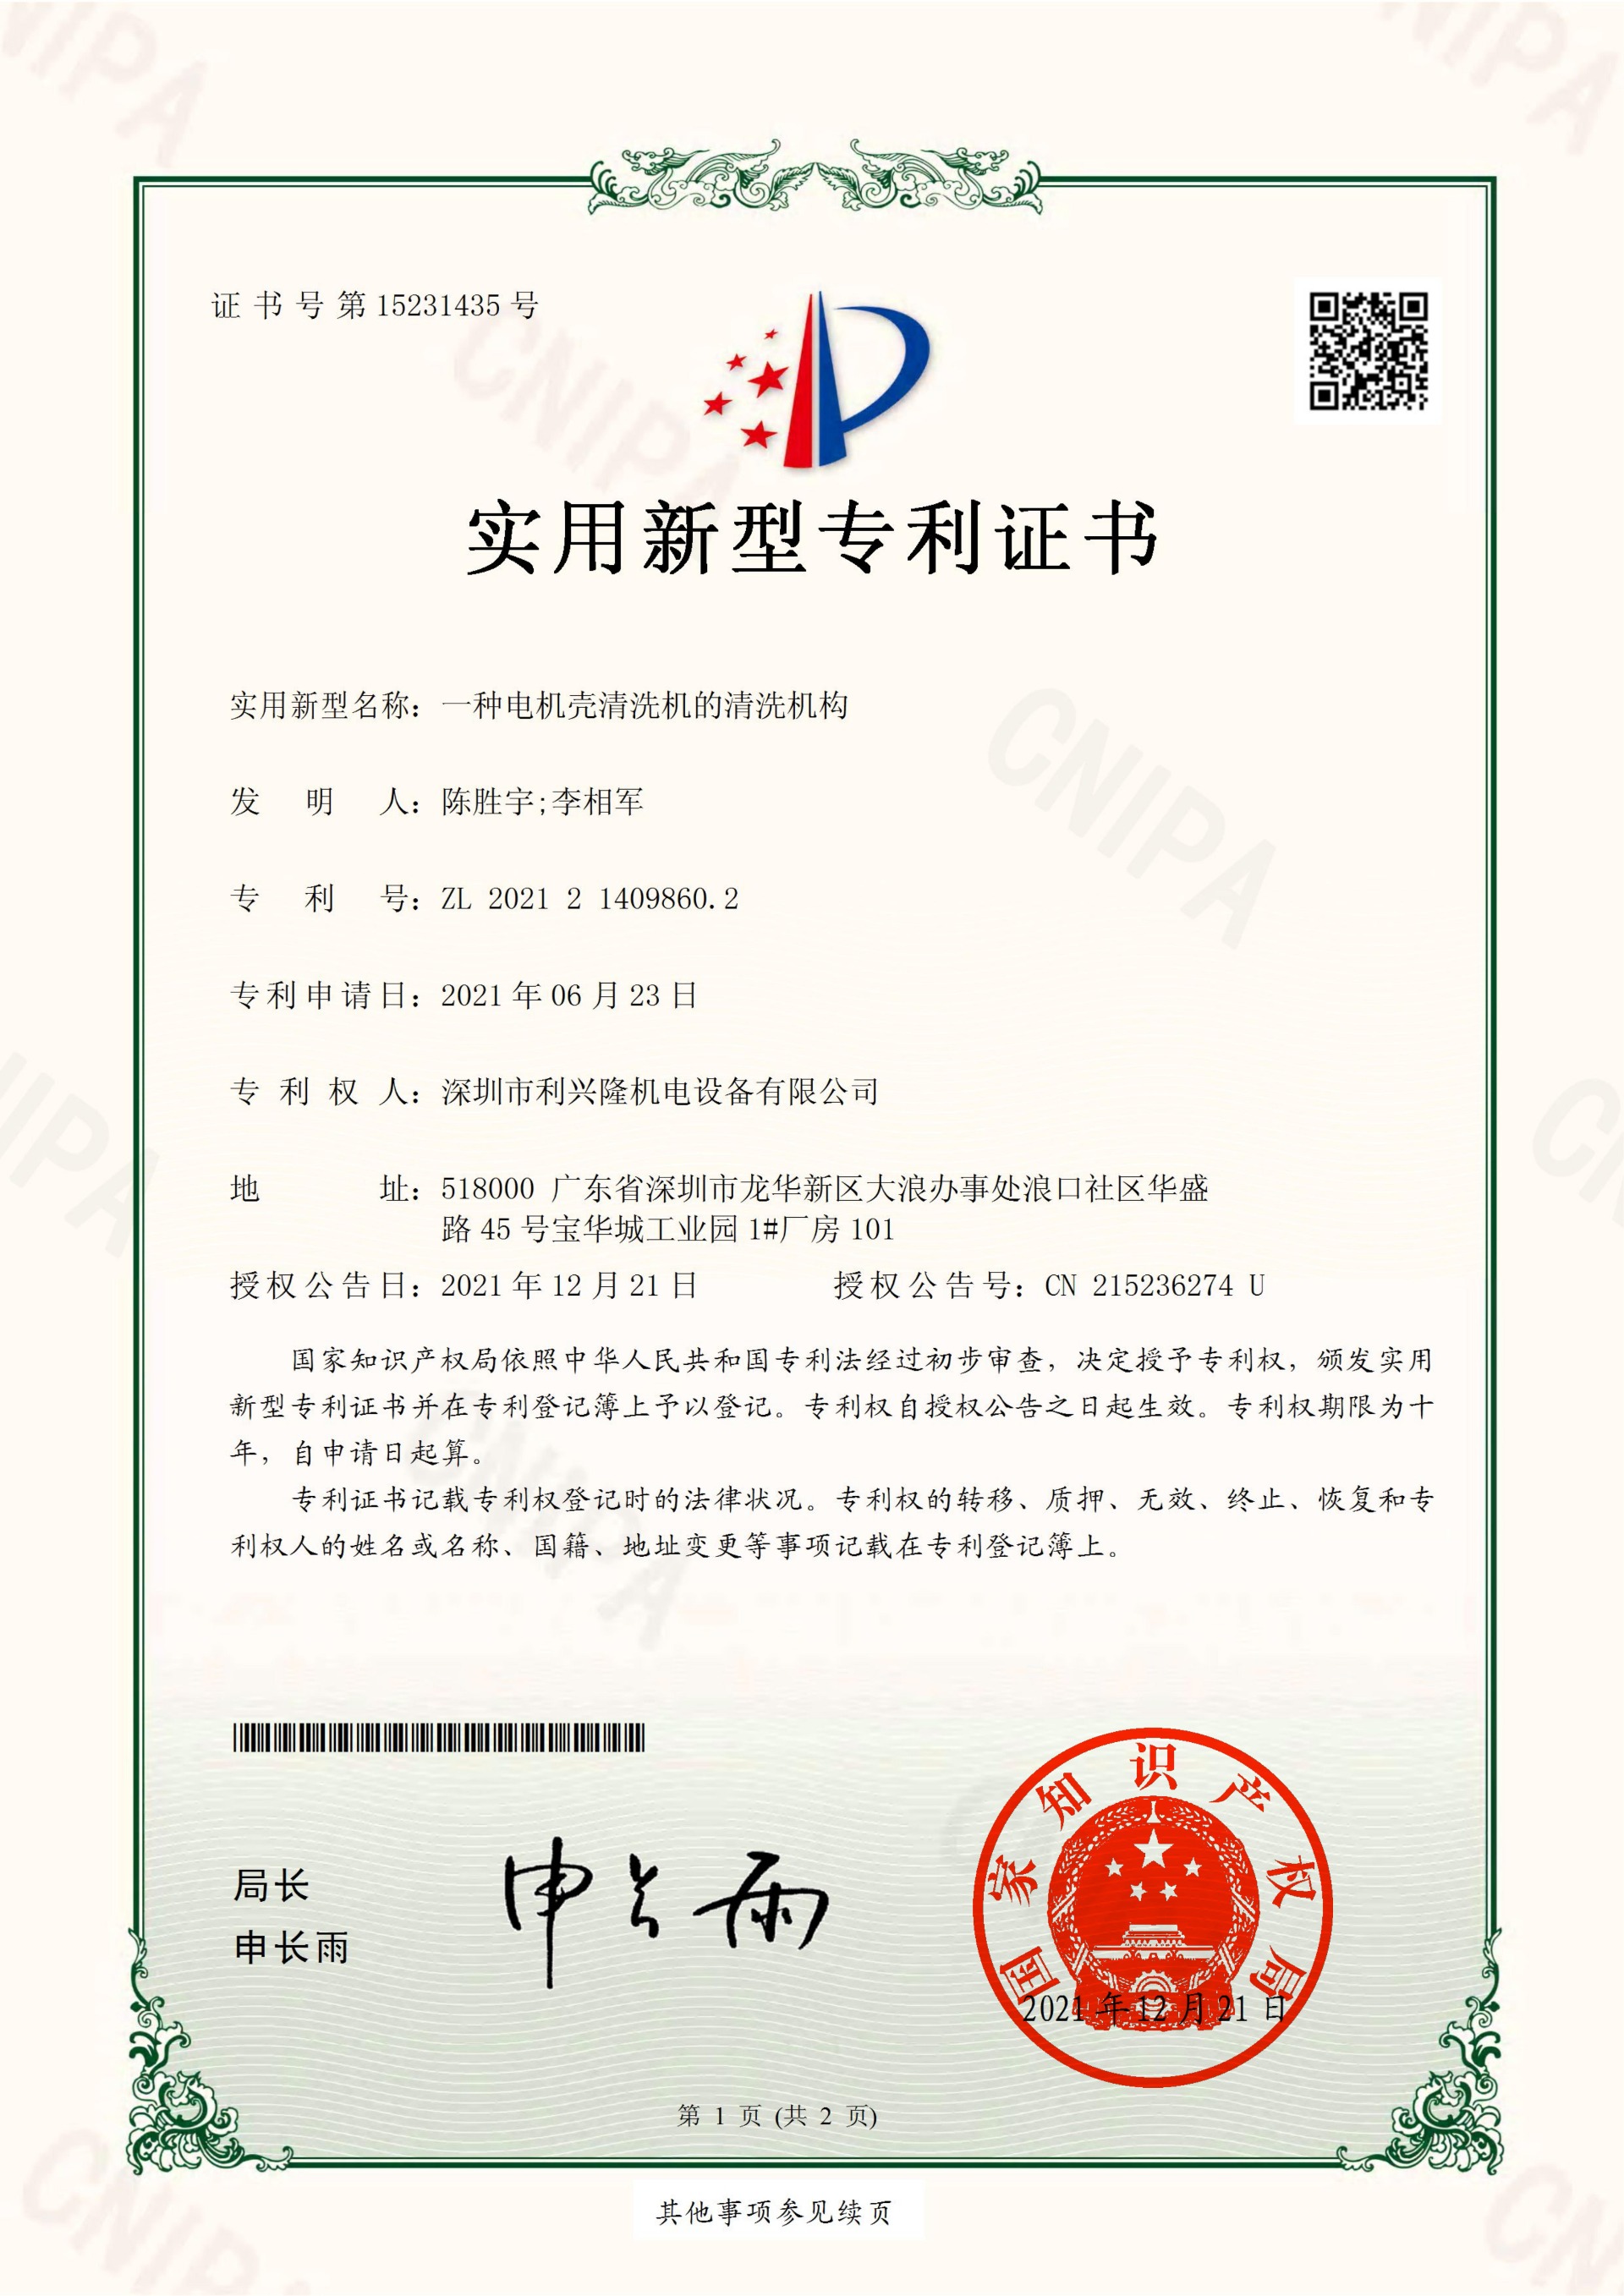 实用新型专利证书  一种电机壳清洗机的清洗机构-深圳市利兴隆机电设备有限公司_00